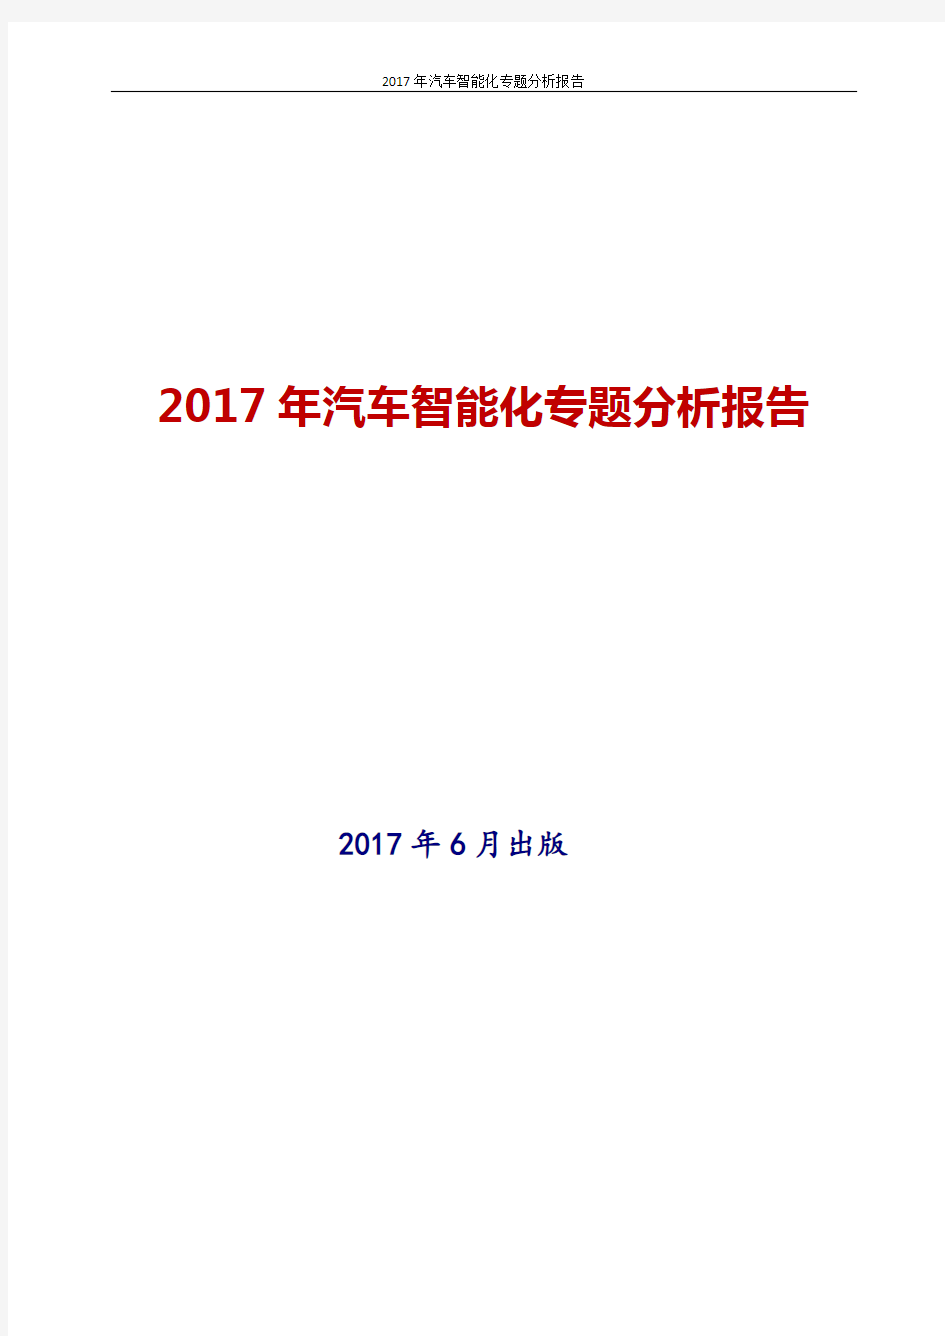 2017年最新版中国汽车智能化专题投资策略分析报告